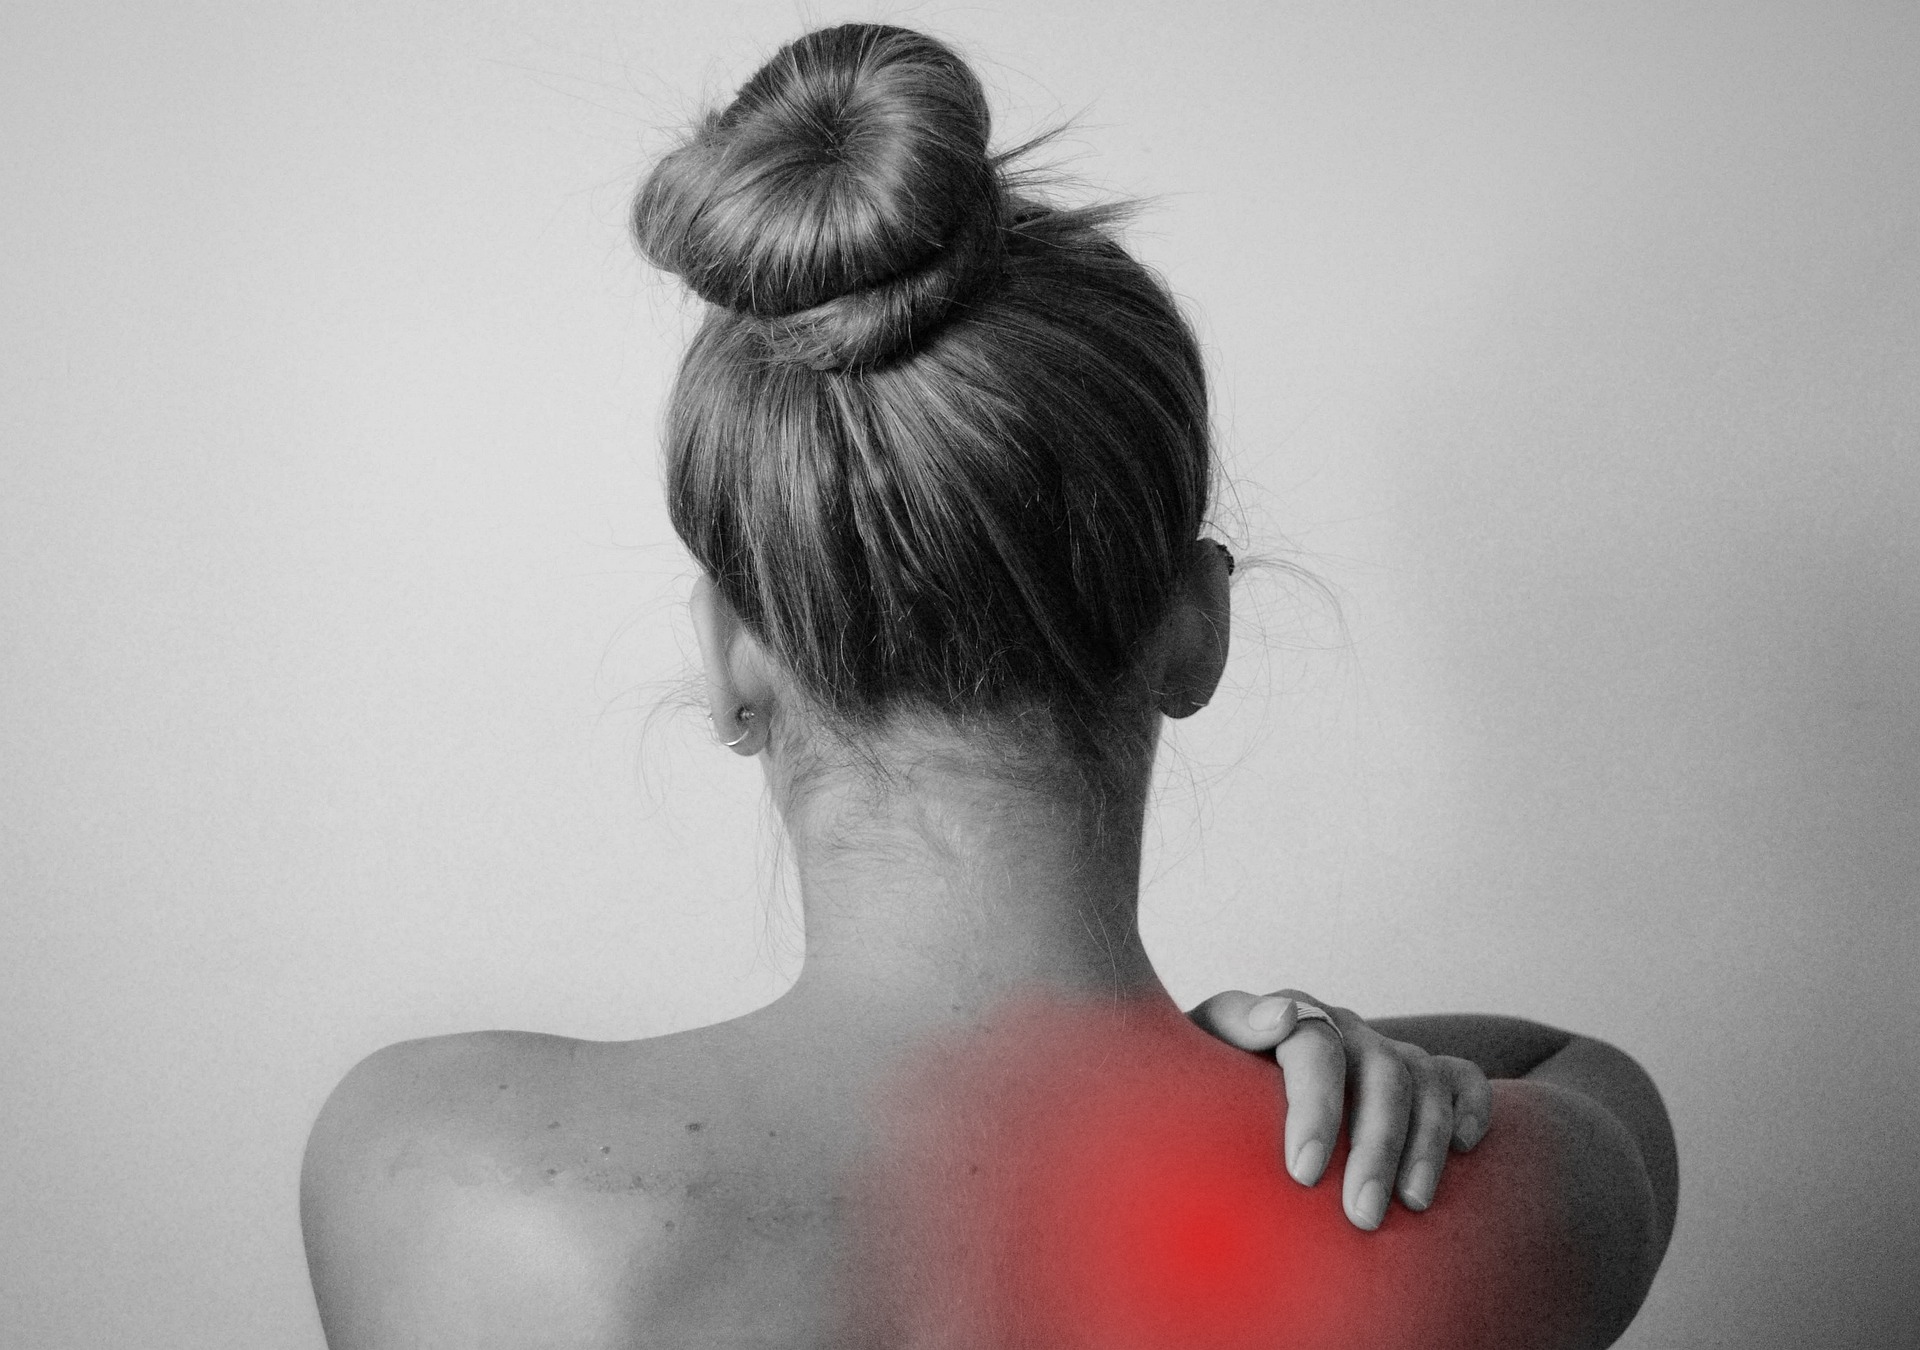 Femme de dos avec douleur en rouge sur l’homoplate